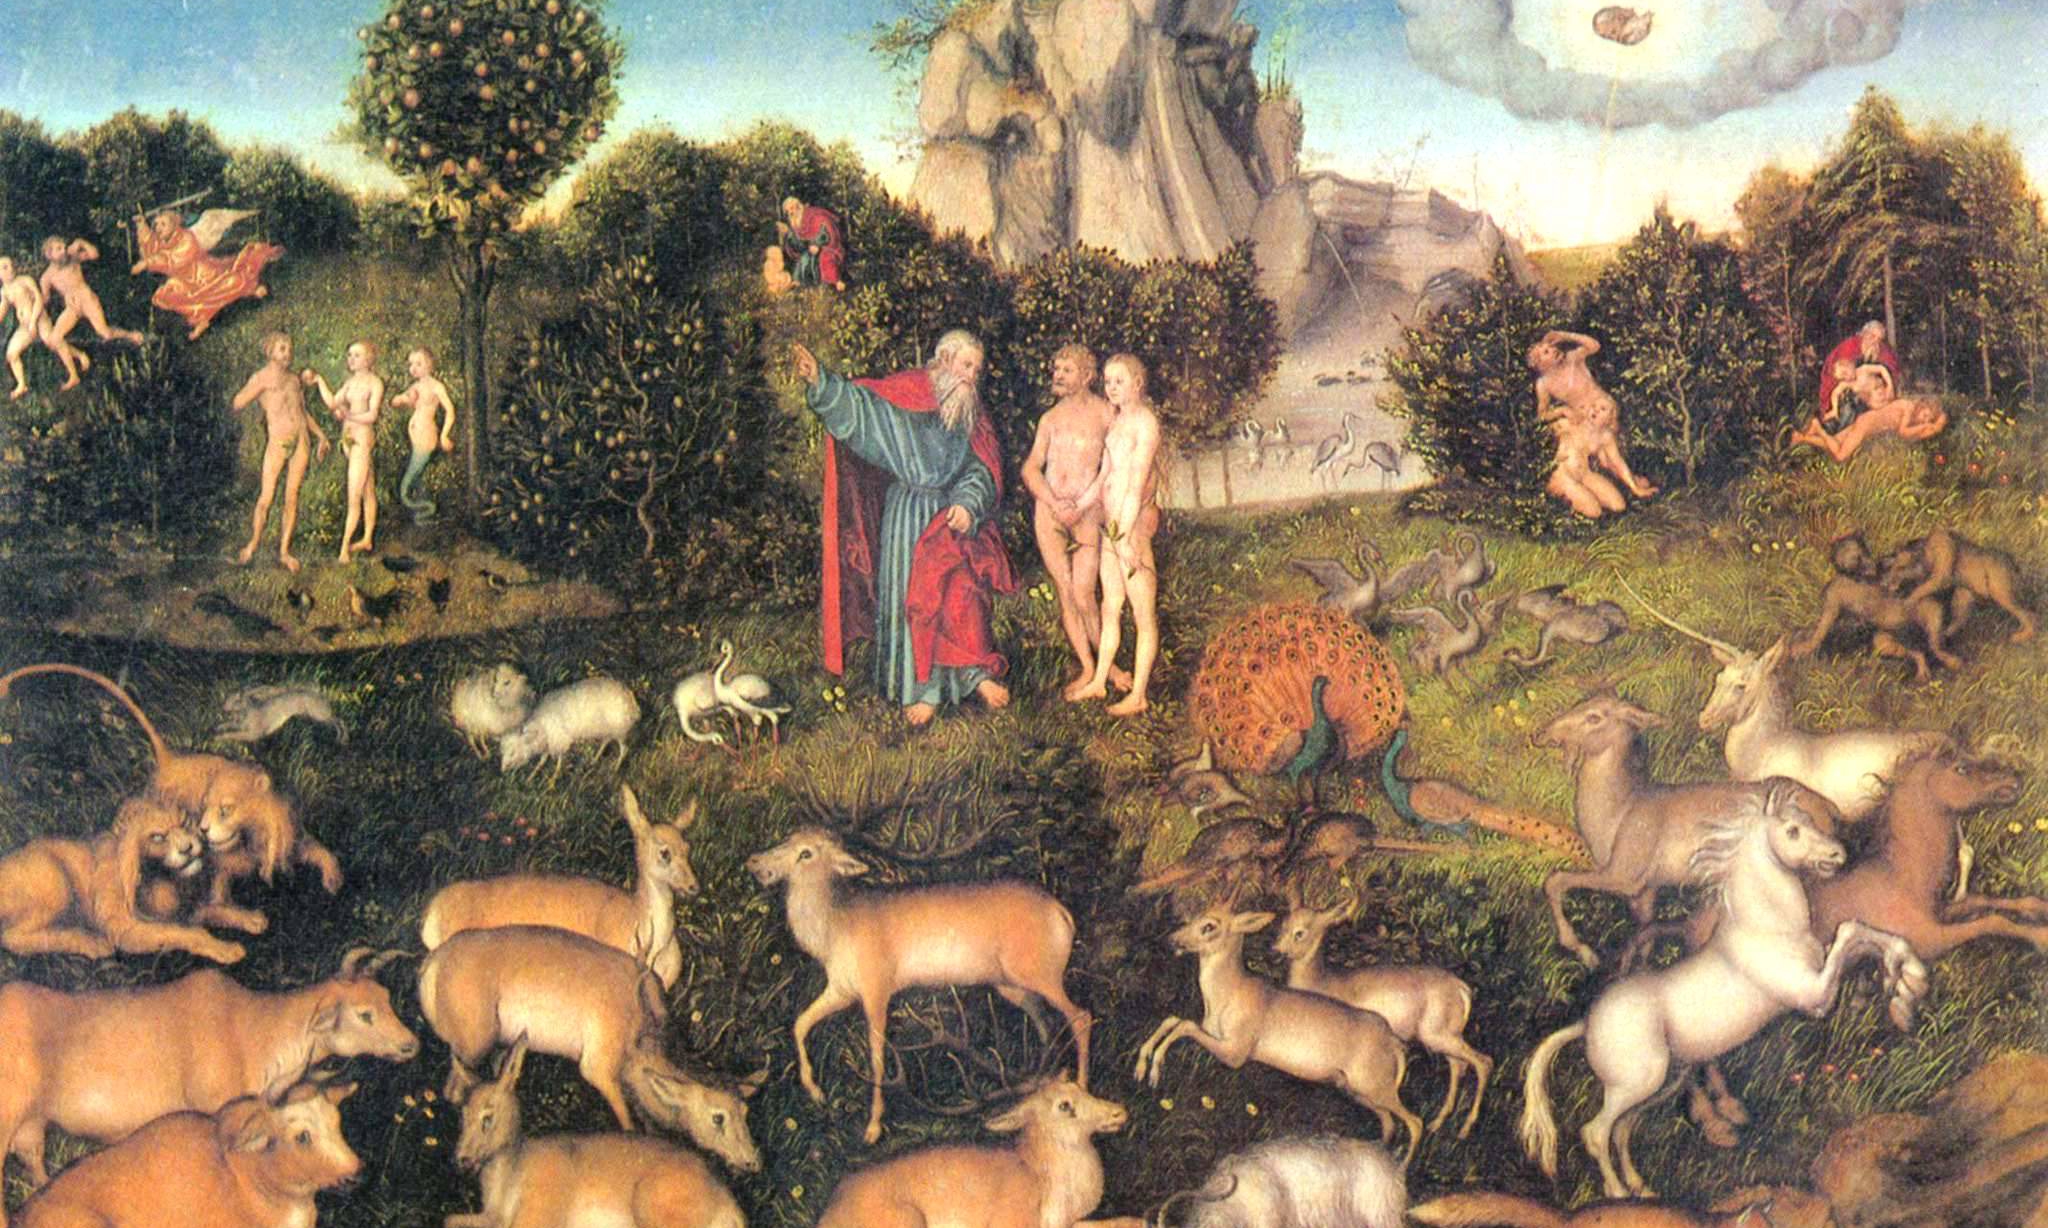 Lucas Cranach, The Garden of Eden